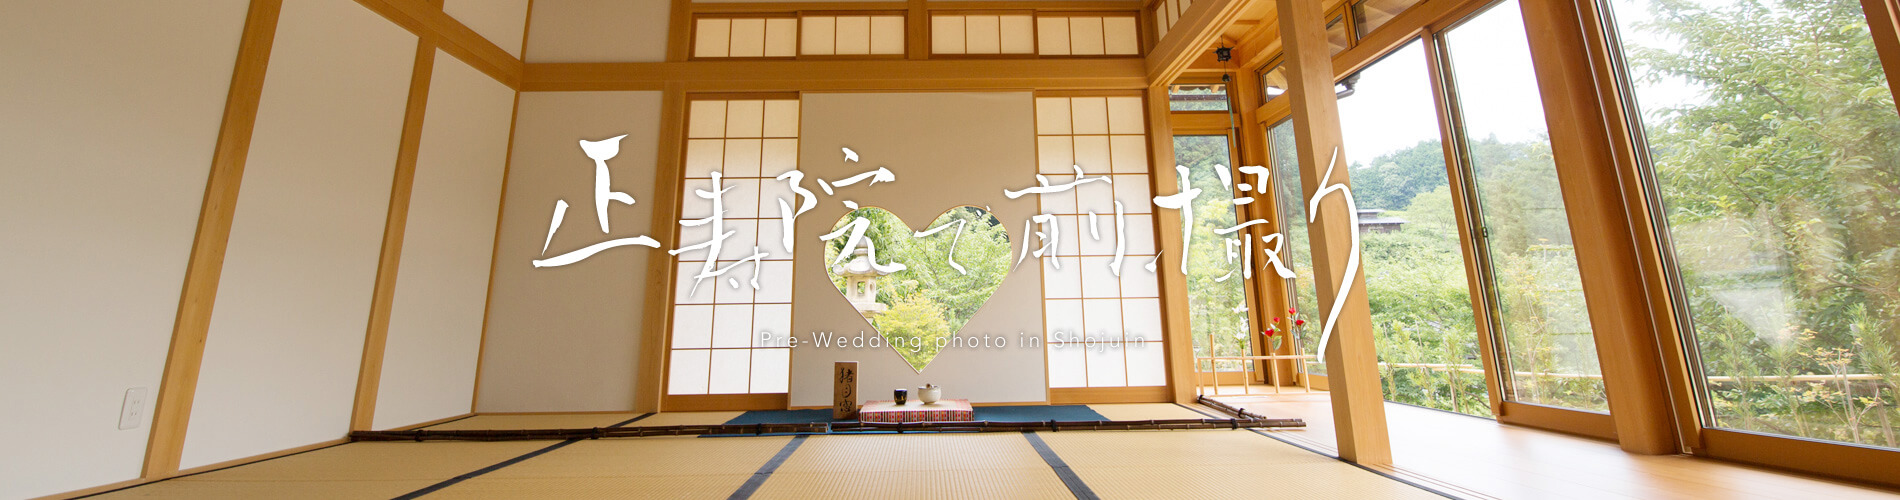 京都和装前撮り・フォトウェディングの京都好日の正寿院前撮りプラン